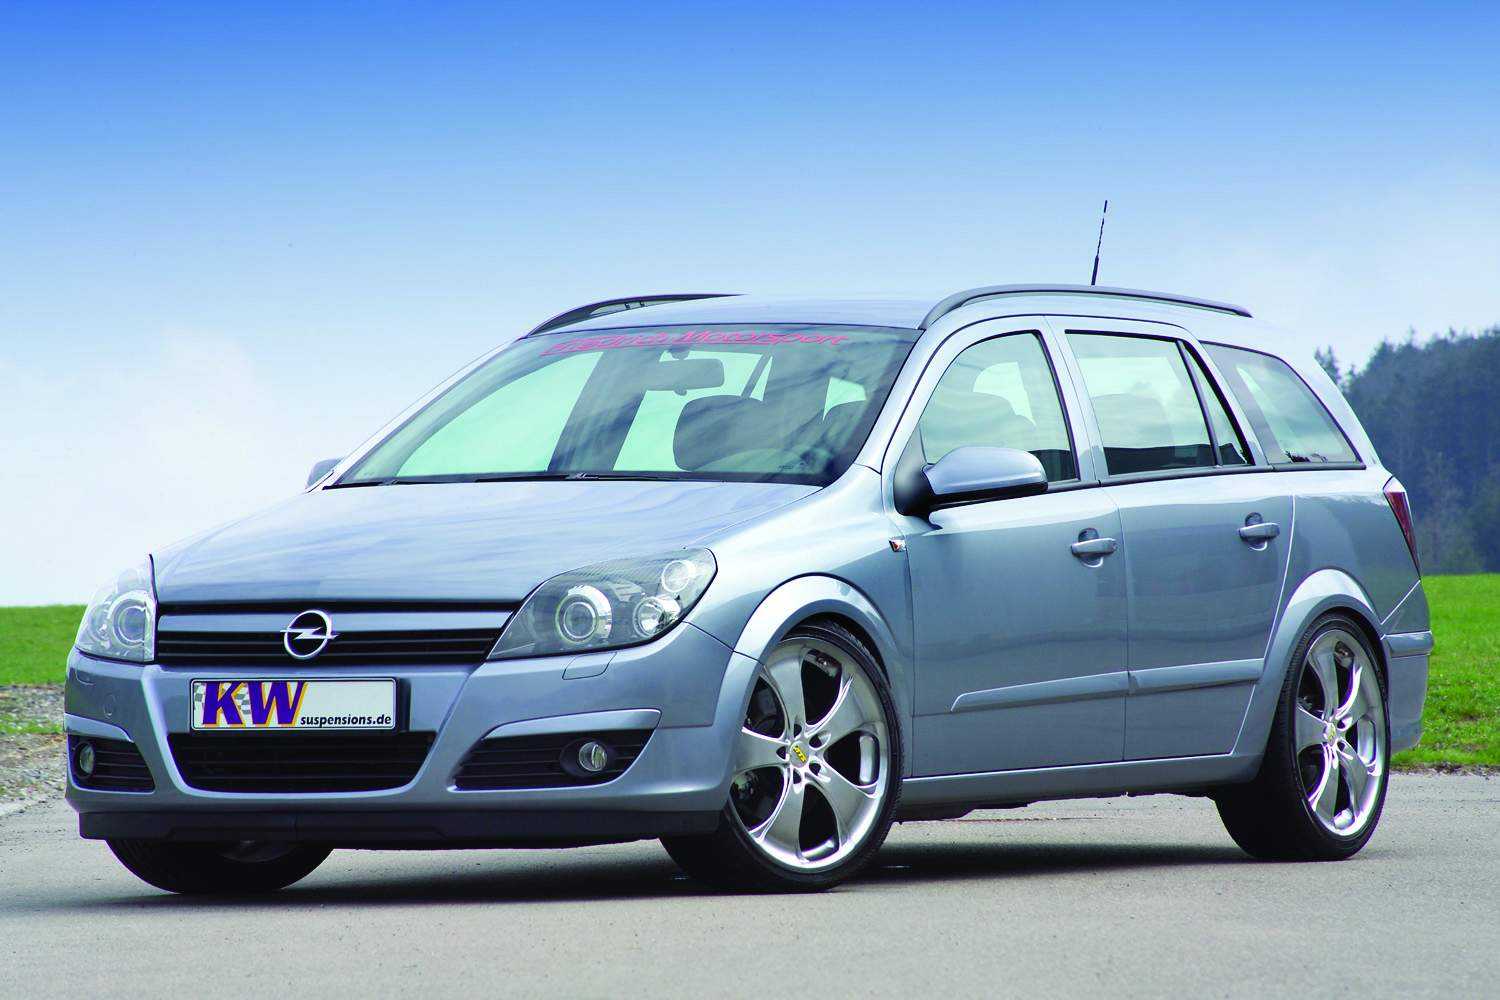 Опель универсал 1.4. Opel Astra Caravan. Opel Astra Caravan 2007. Opel Astra h универсал.